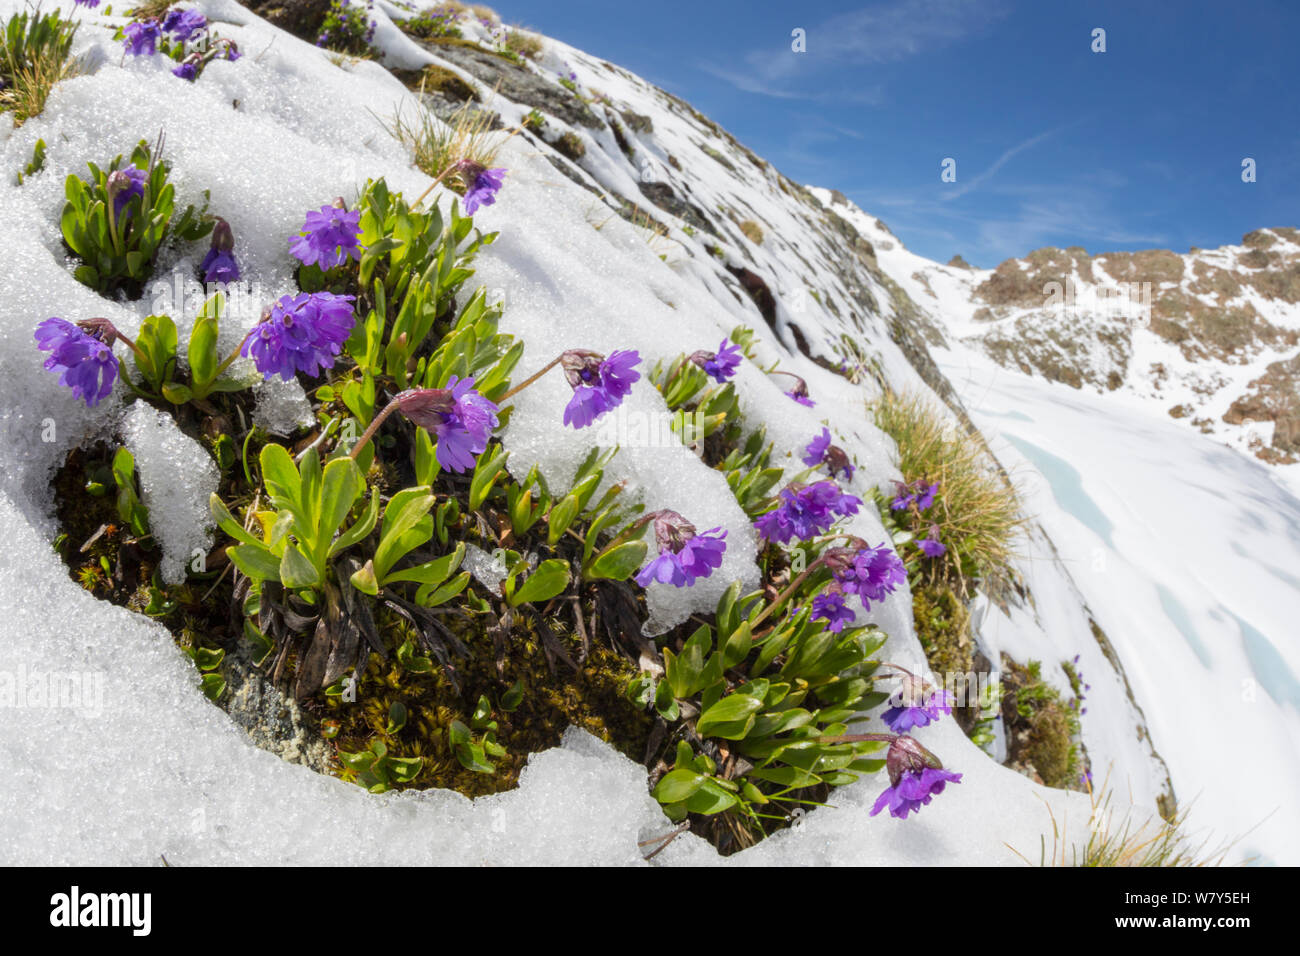 Viscid primrose (Primula latitolia) flowering in snow. Nordtirol, Austrian Alps, July. Stock Photo